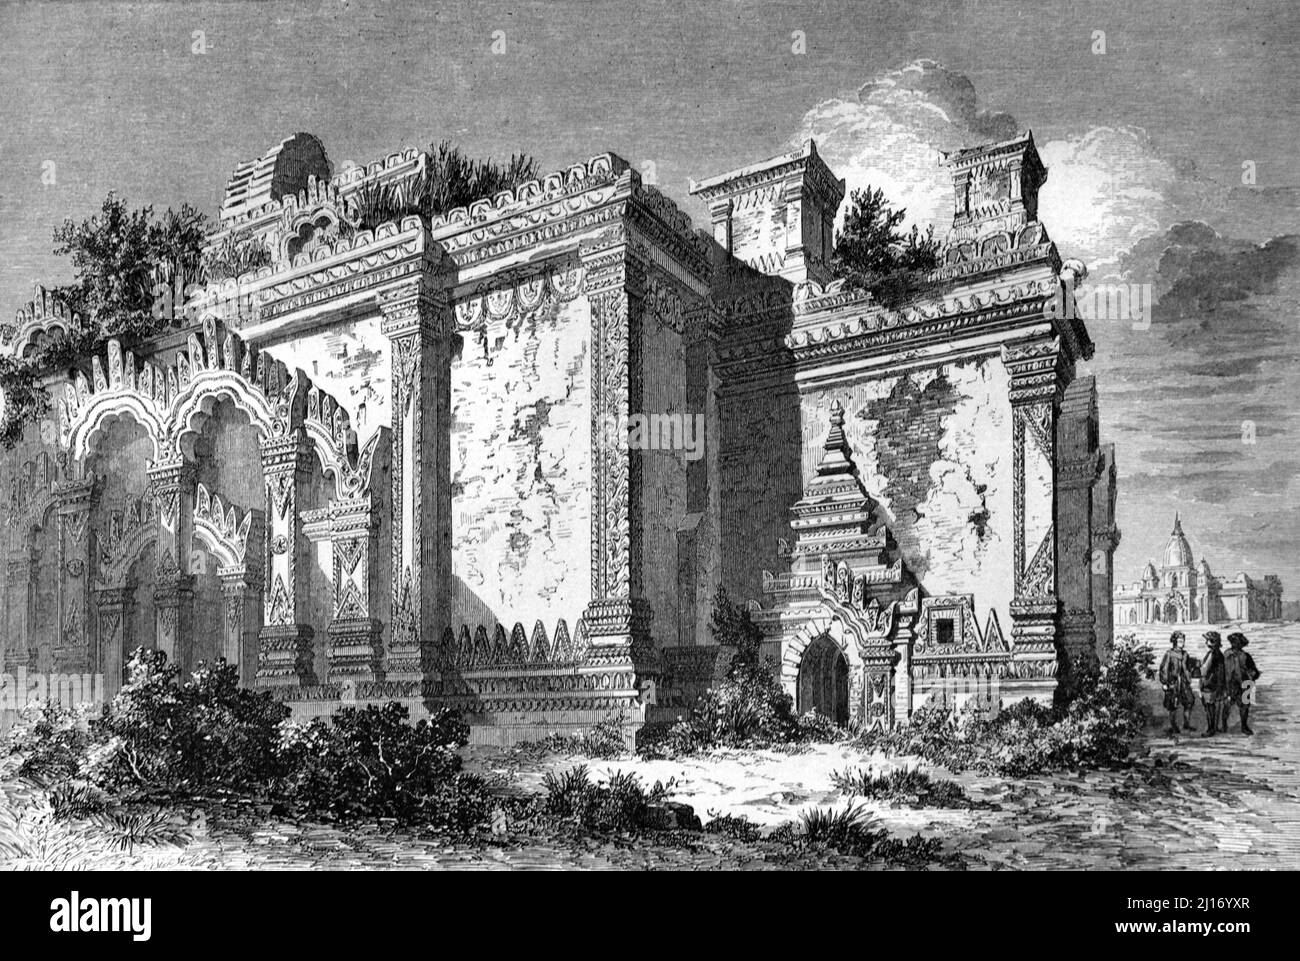 Zerstörte buddhistische Tempel in Bagan, früher Pagan, Myanmar oder Burma. Vintage Illustration oder Gravur 1860. Stockfoto